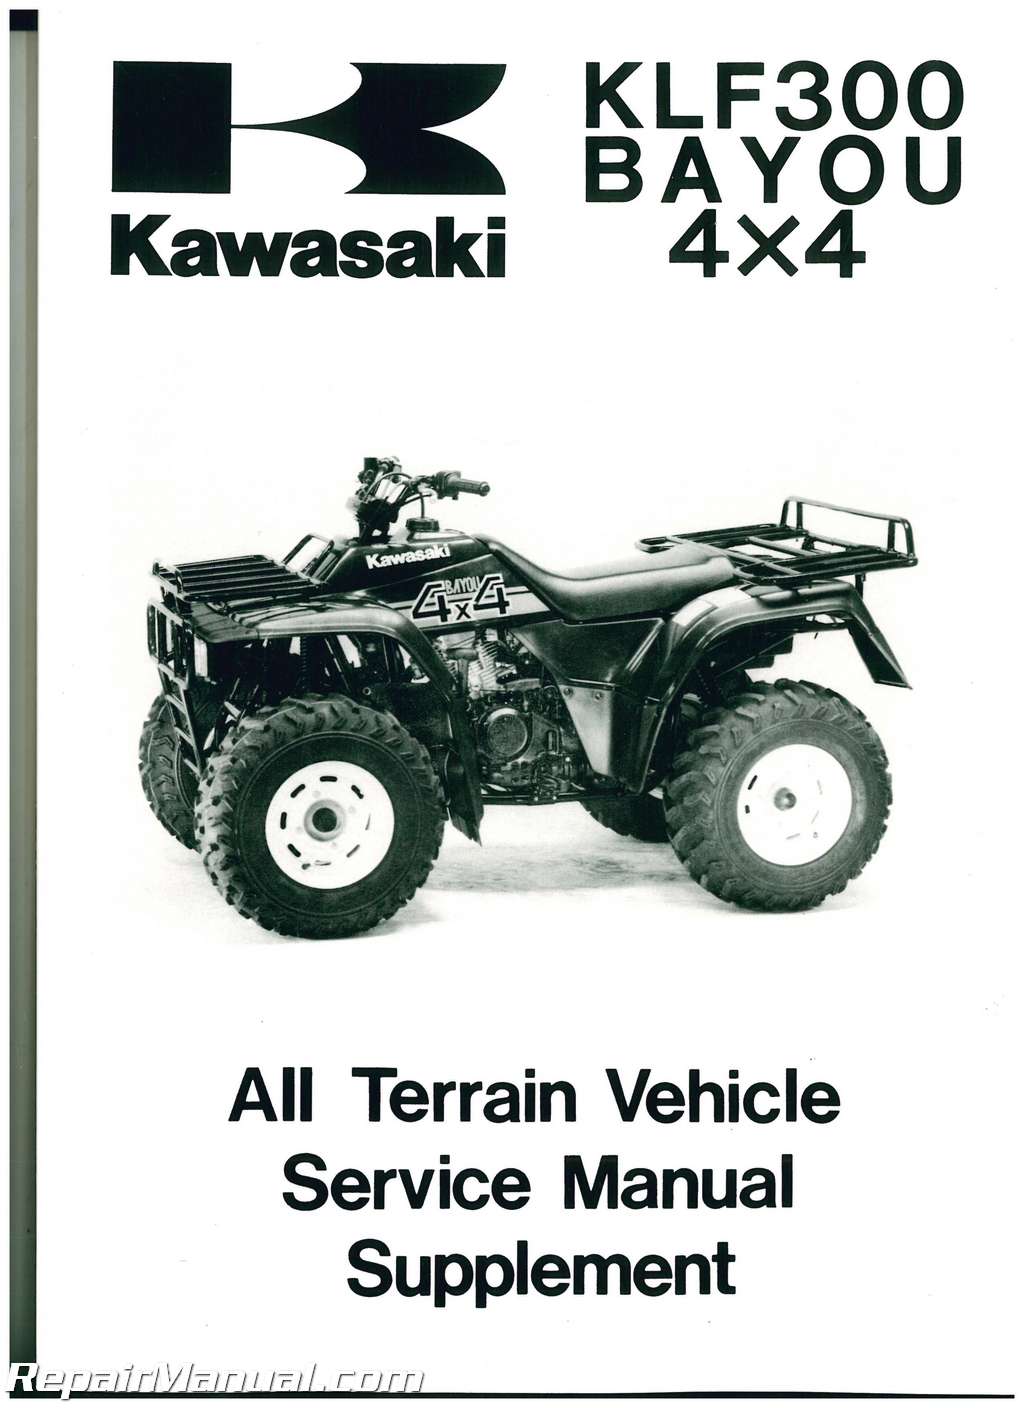 1989-2006 Kawasaki Bayou 4×4 Service Manual